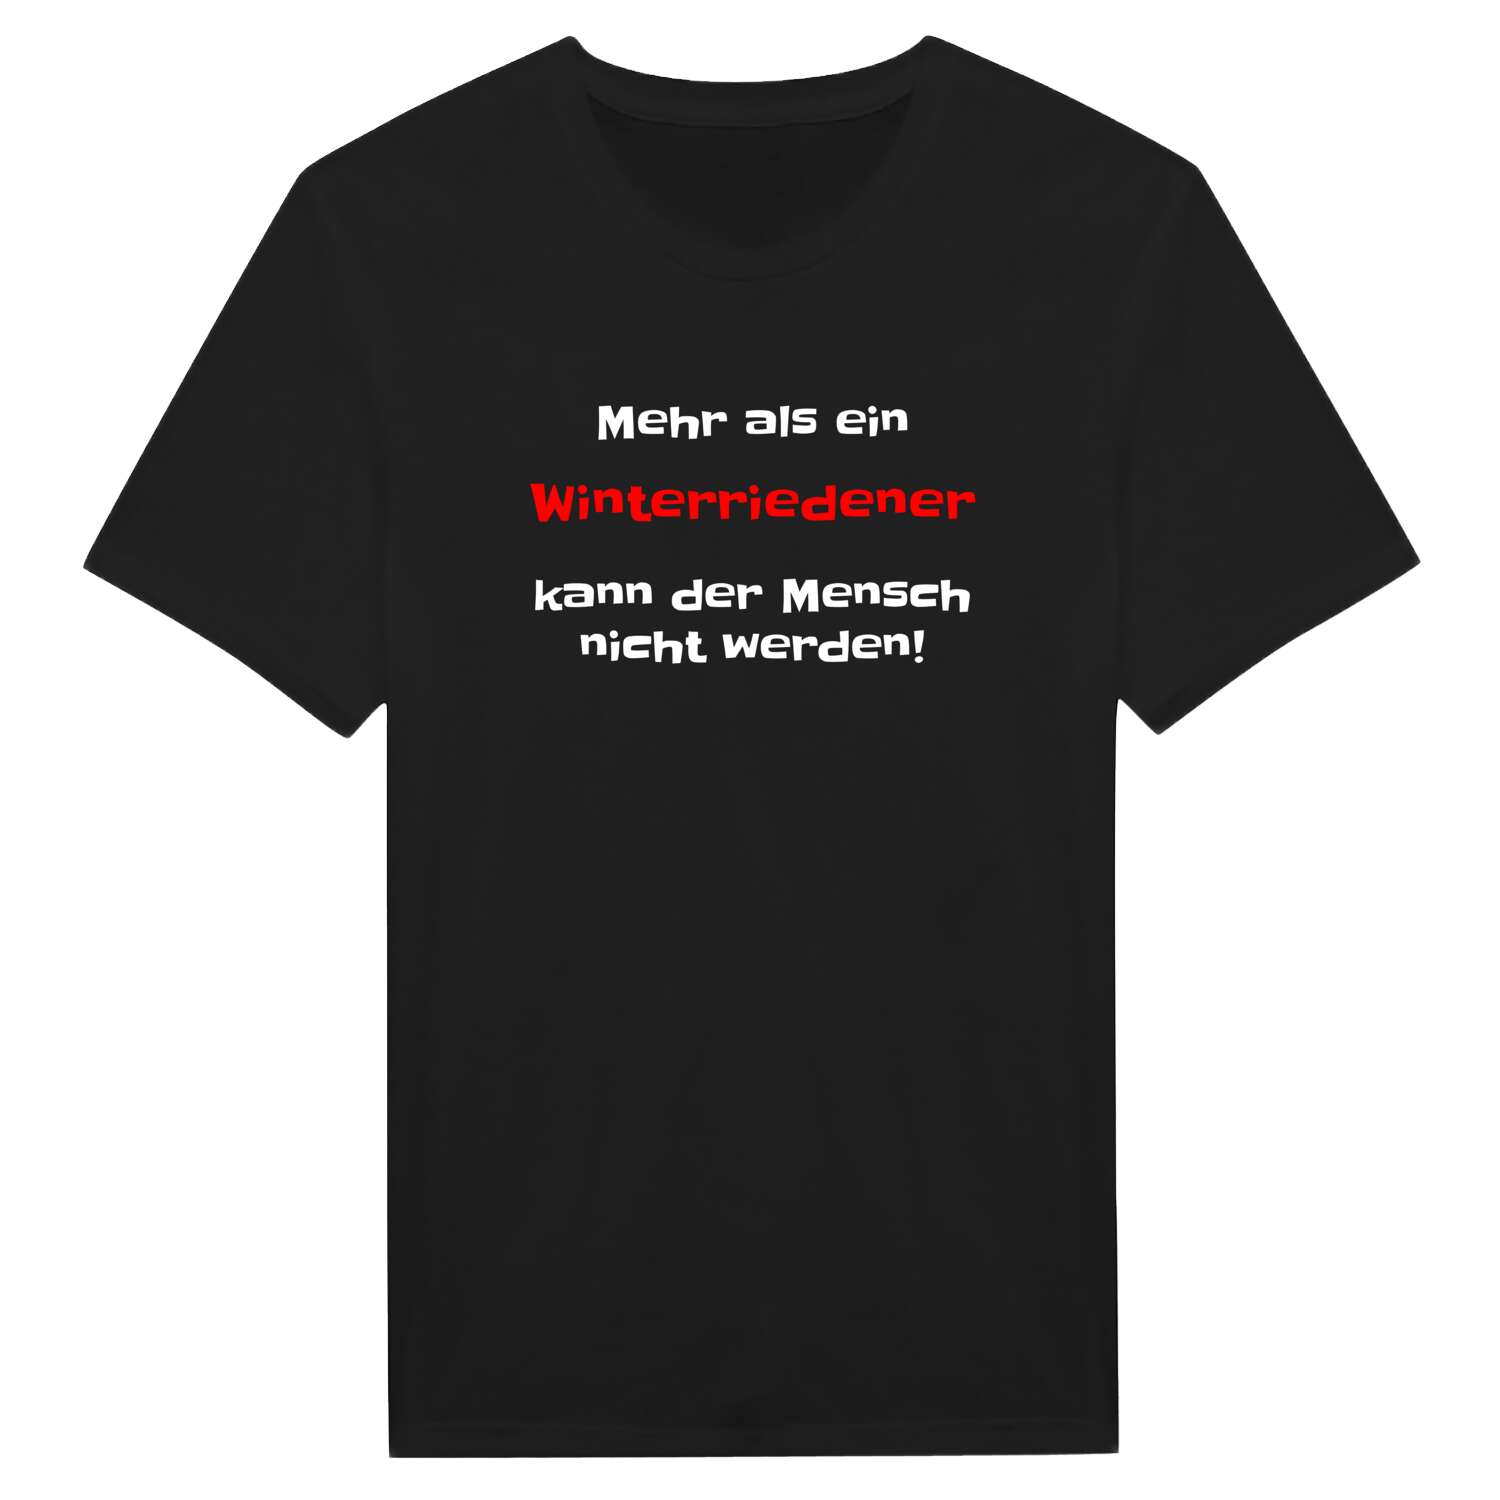 Winterrieden T-Shirt »Mehr als ein«